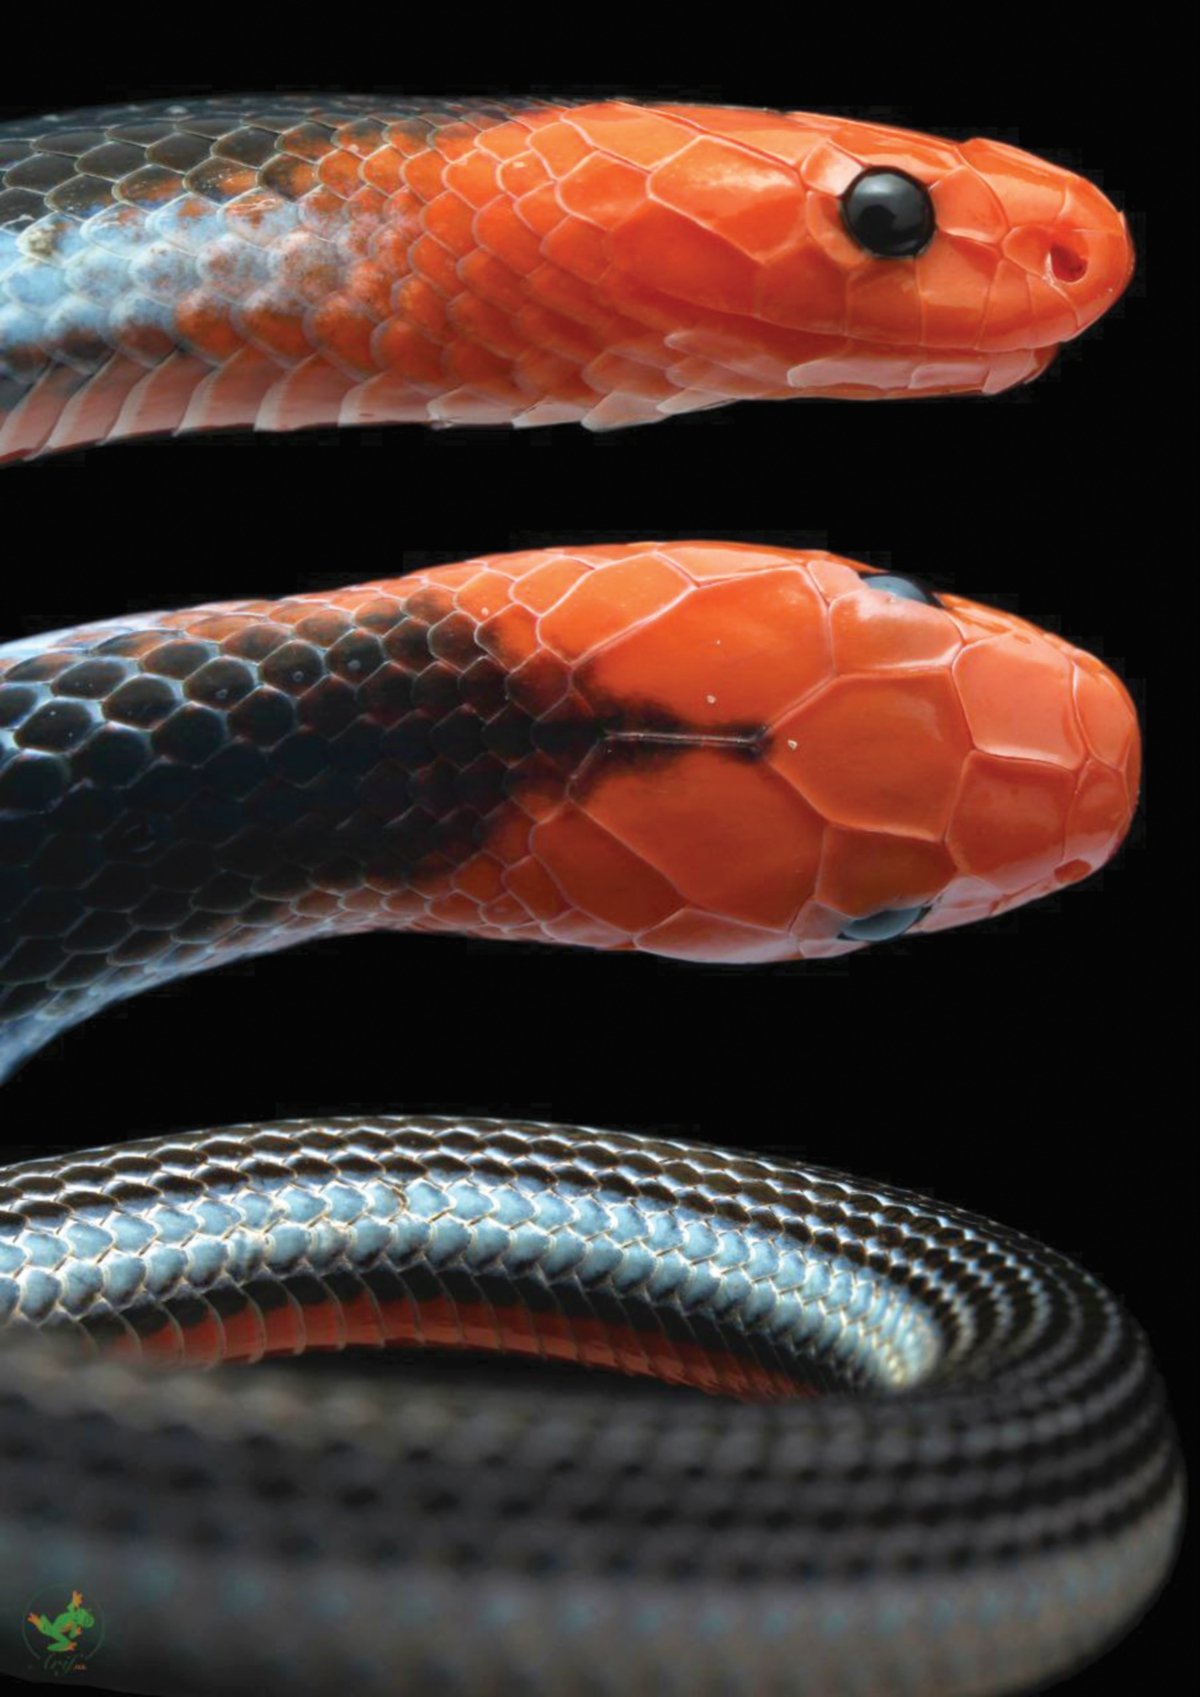 JELAS perincian ular terutama warna dan tekstur dirakam lensa makro.